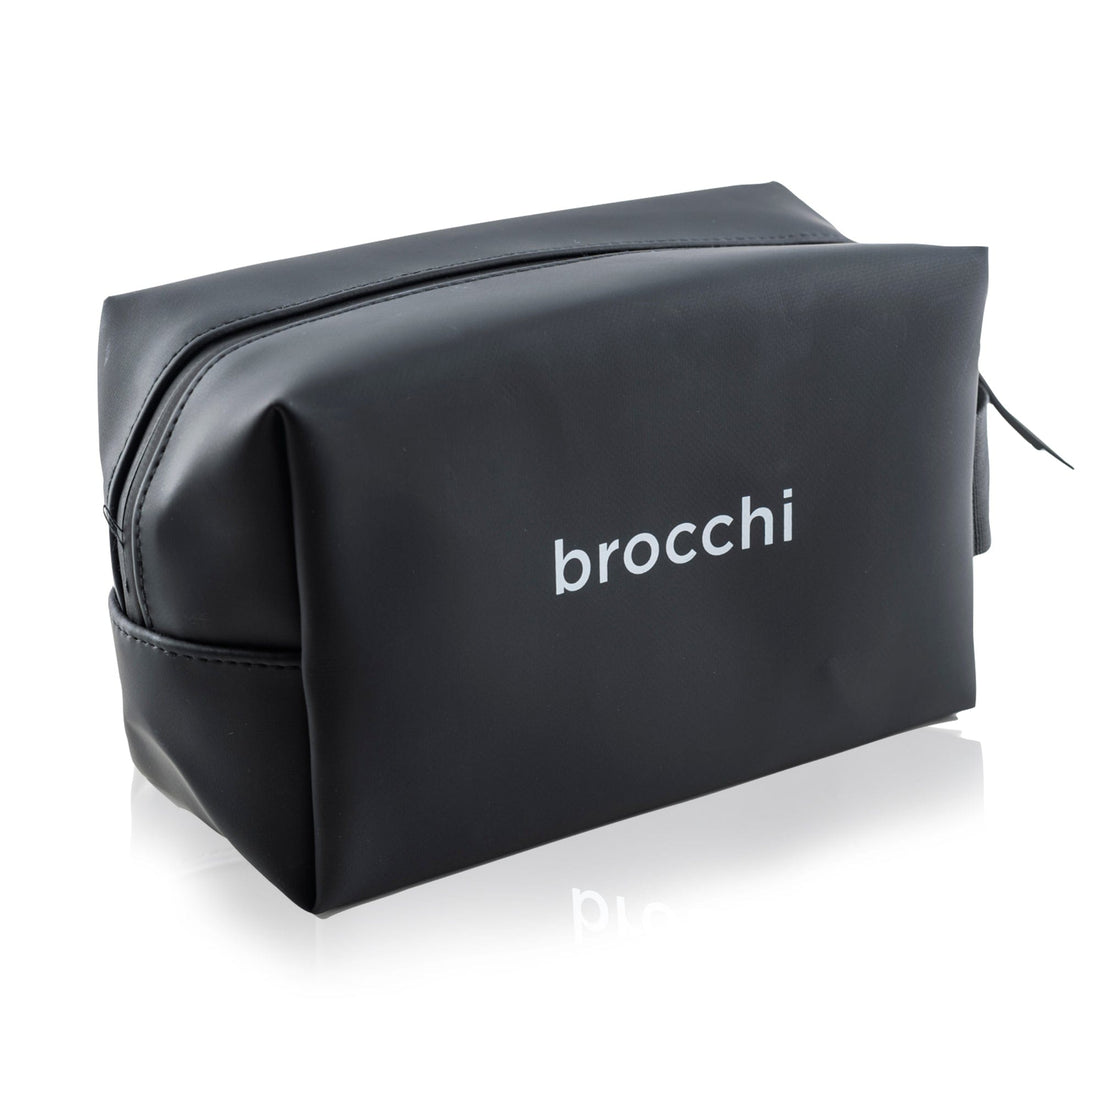 Brocchi Brocchi Waterproof Travel Toiletry Bag